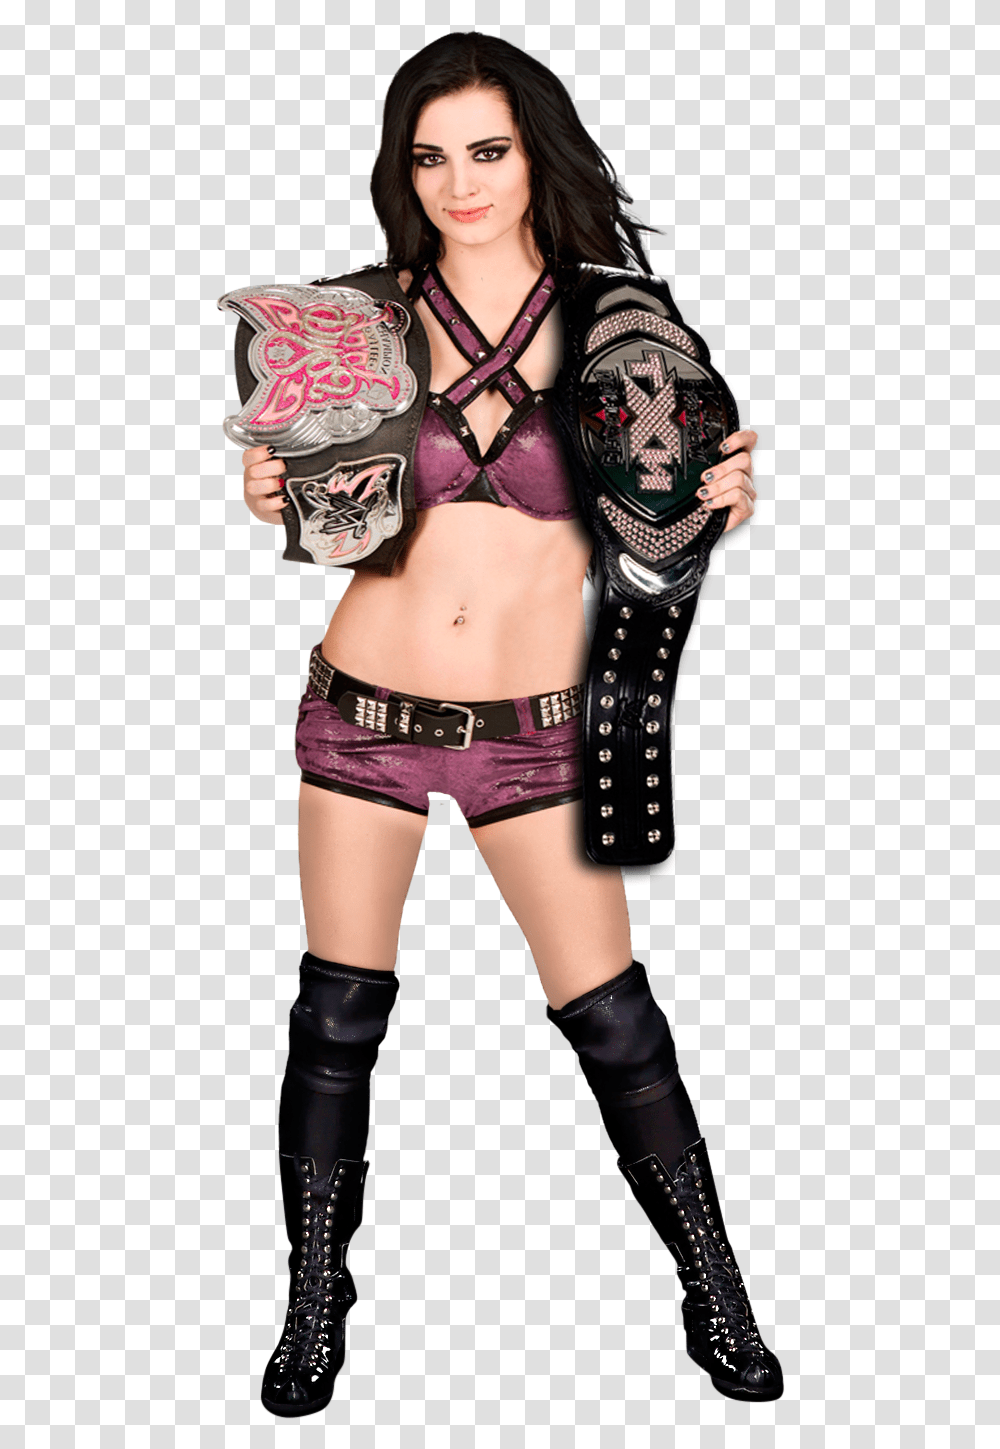 Paige As Divas Champion Women's By Nxt Wwe Championship Paige, Person, Lingerie, Underwear Transparent Png